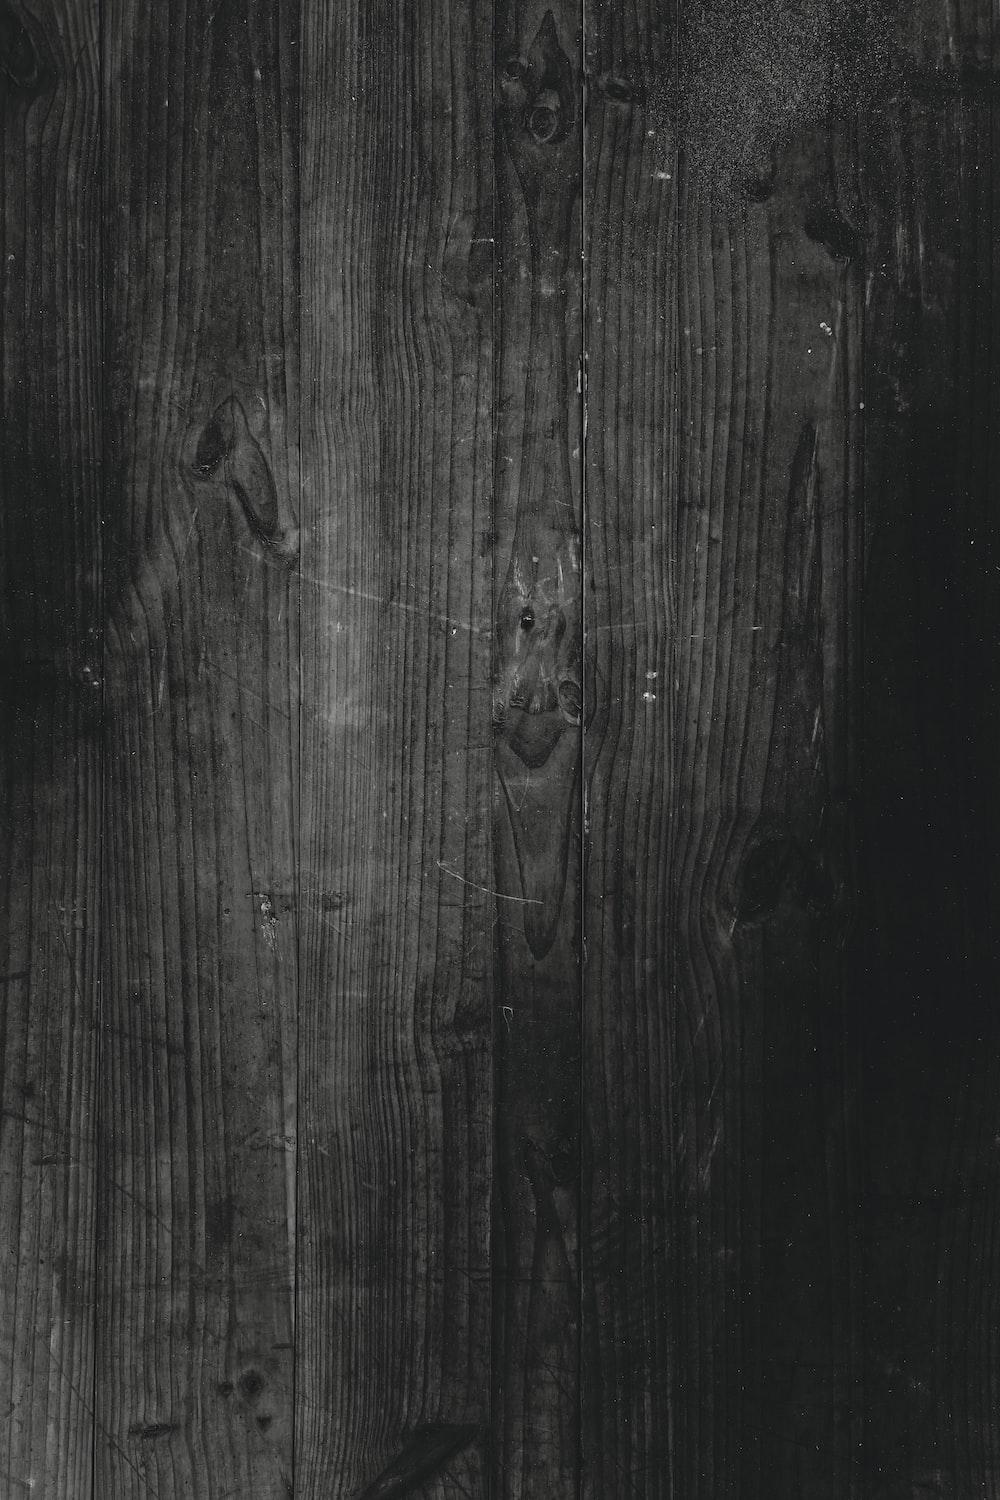 Nền vân gỗ đen đang là xu hướng được nhiều người ưa chuộng trong thiết kế ngày nay. Top Free Dark Wood Texture cung cấp những hình nền vân gỗ đen tuyệt đẹp và hoàn toàn miễn phí để bạn sử dụng trong công việc của mình.